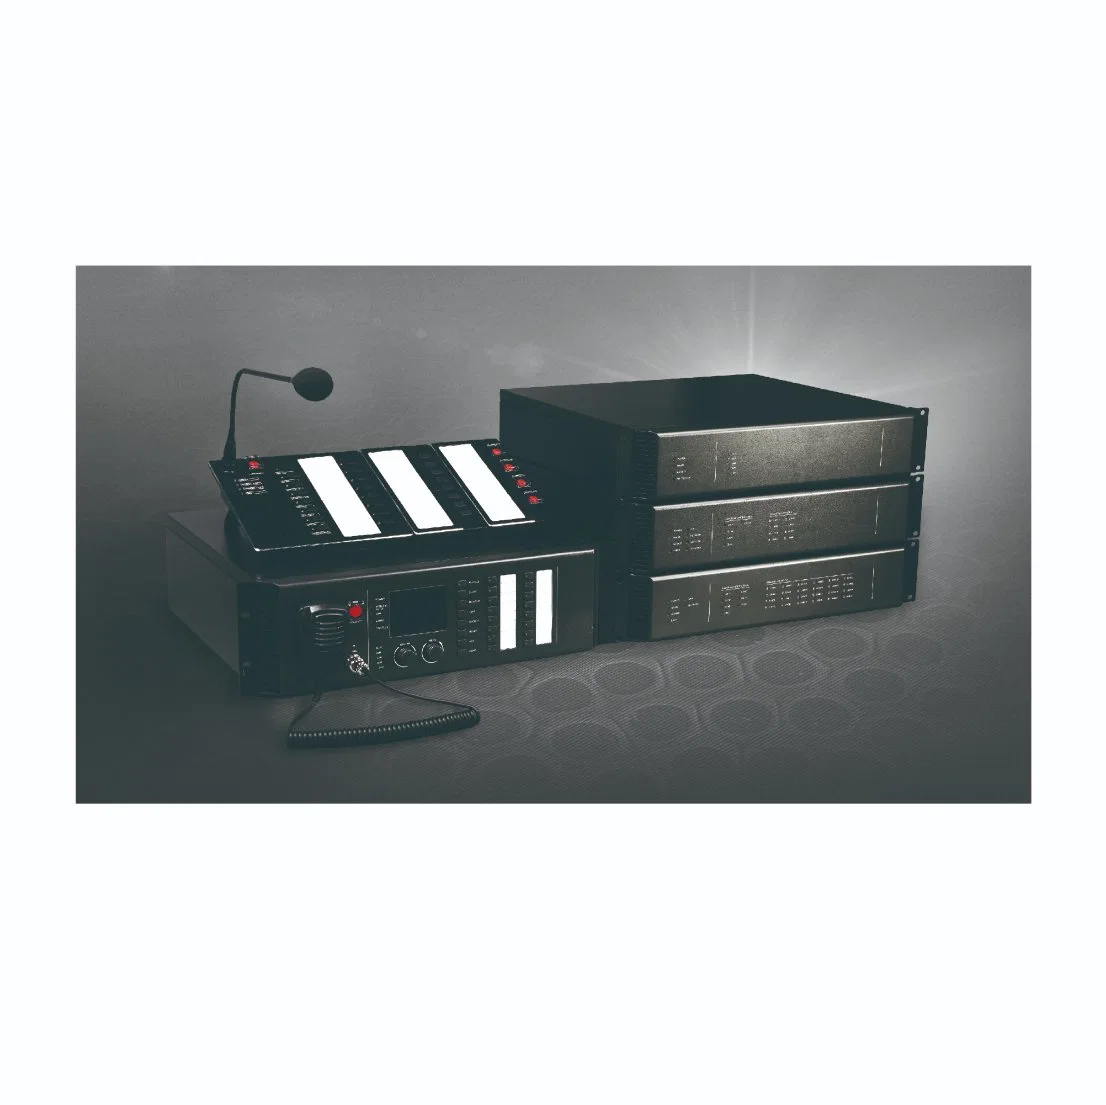 Neuzulieferungsprodukt PV-MCU EN54 Hauptfunktionssteuergerät mit Audio-Speicher und Monitor für Brandmeldeanlage